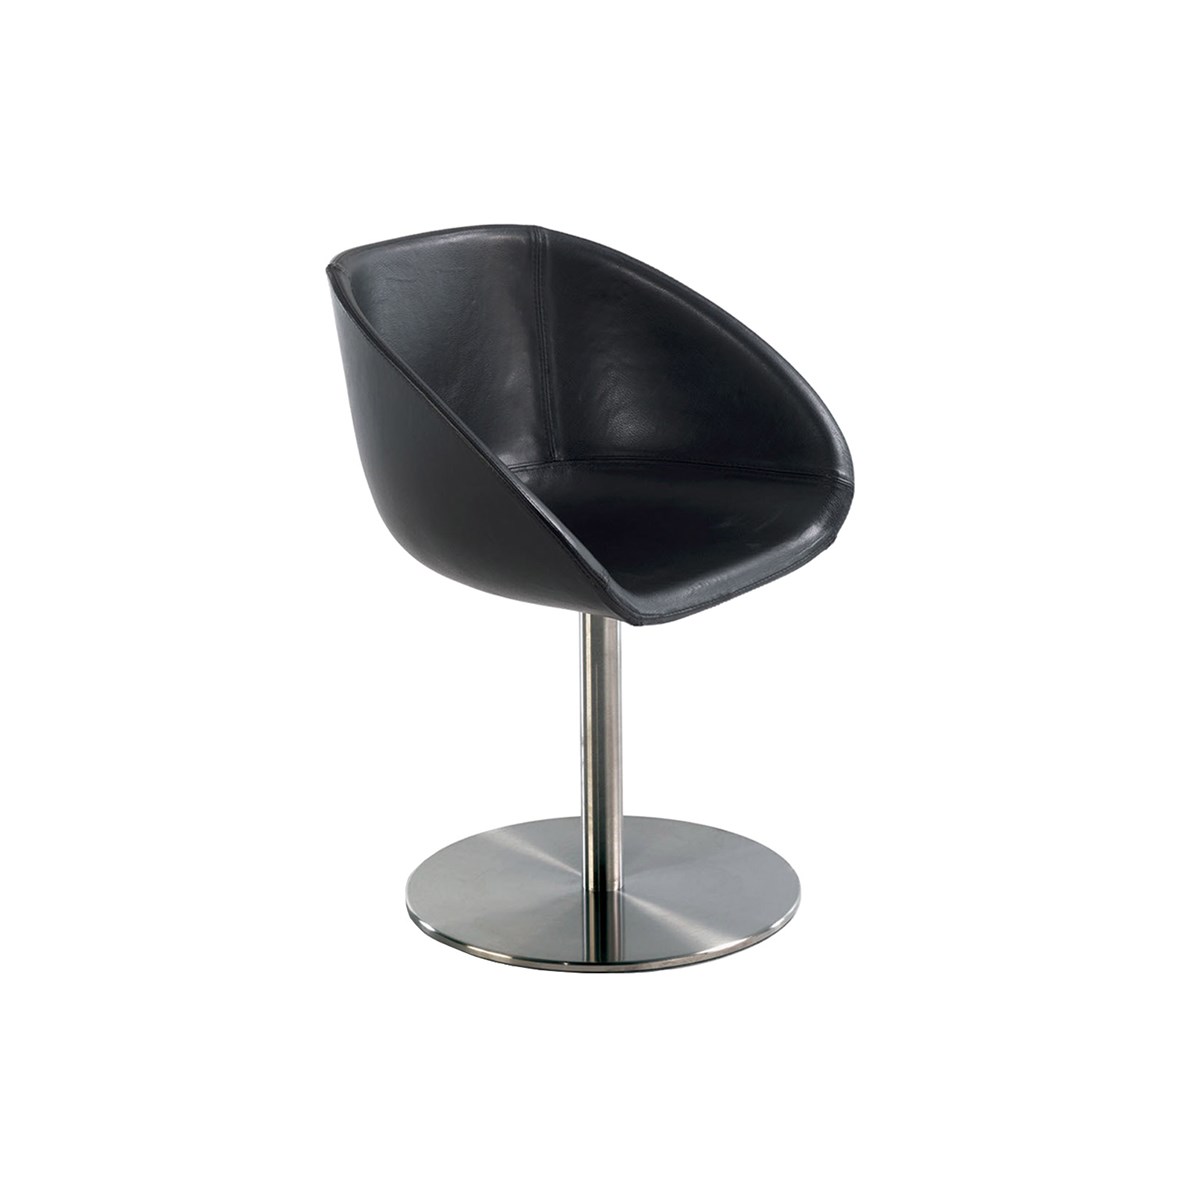 Riva-1920-C.R.-&-S.-RIVA1920-Gioconda-Leather-Chair-Matisse-3